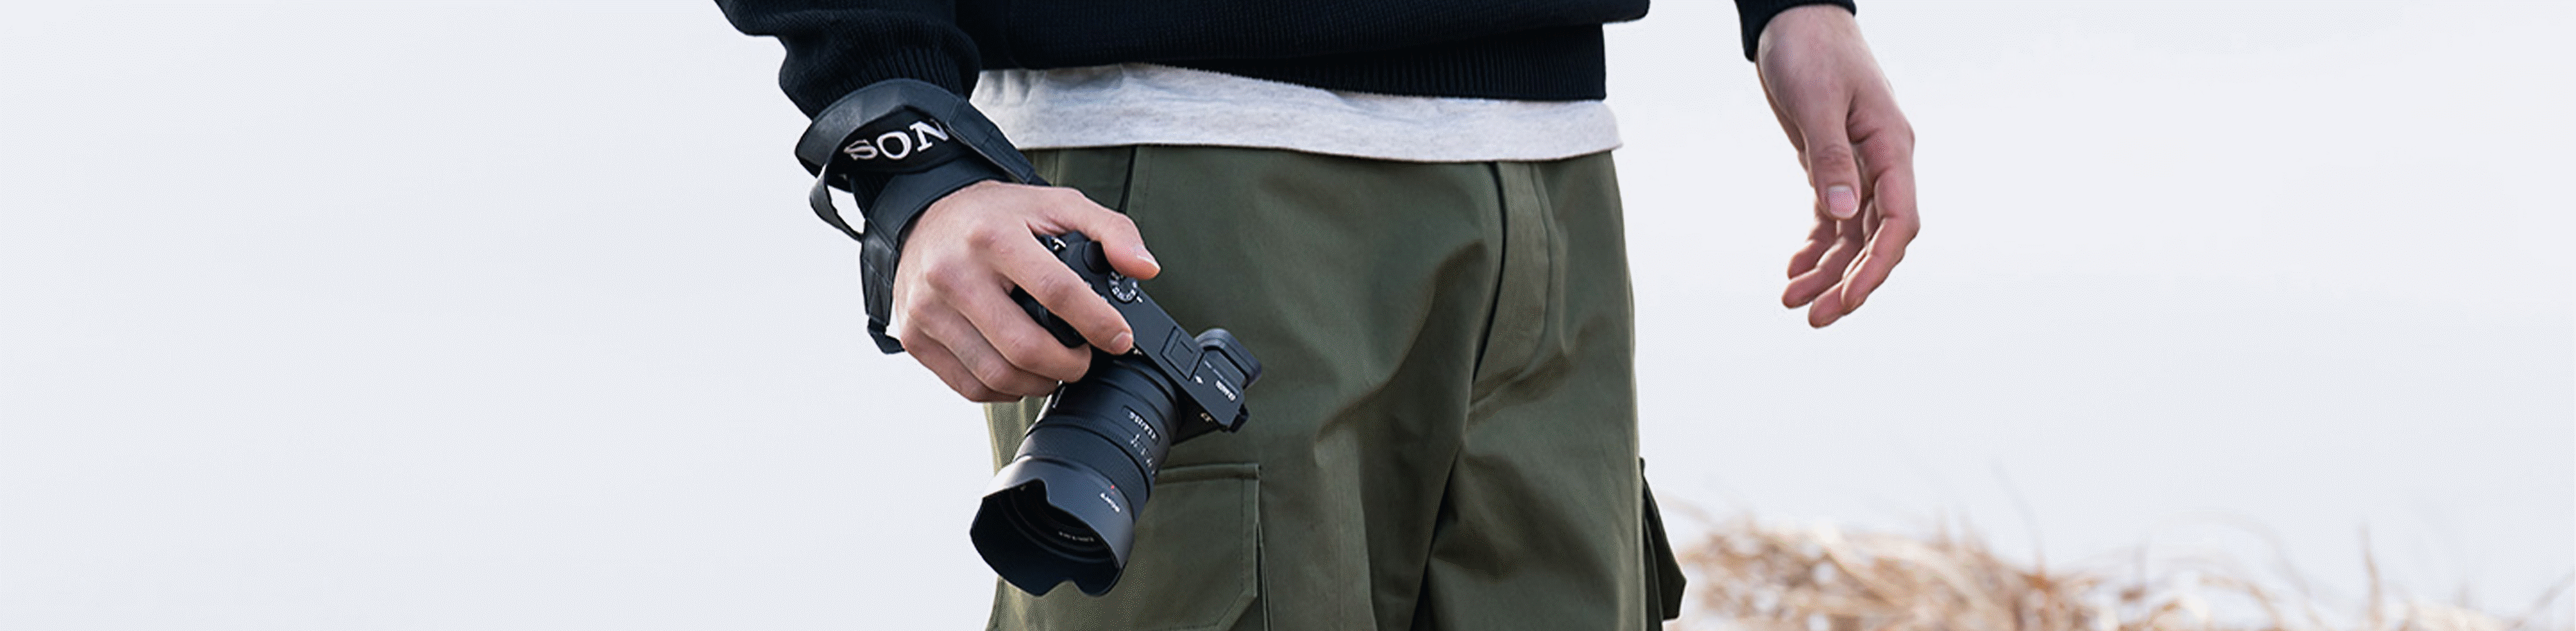 Slika muškarca koji nosi fotoaparat u ruci